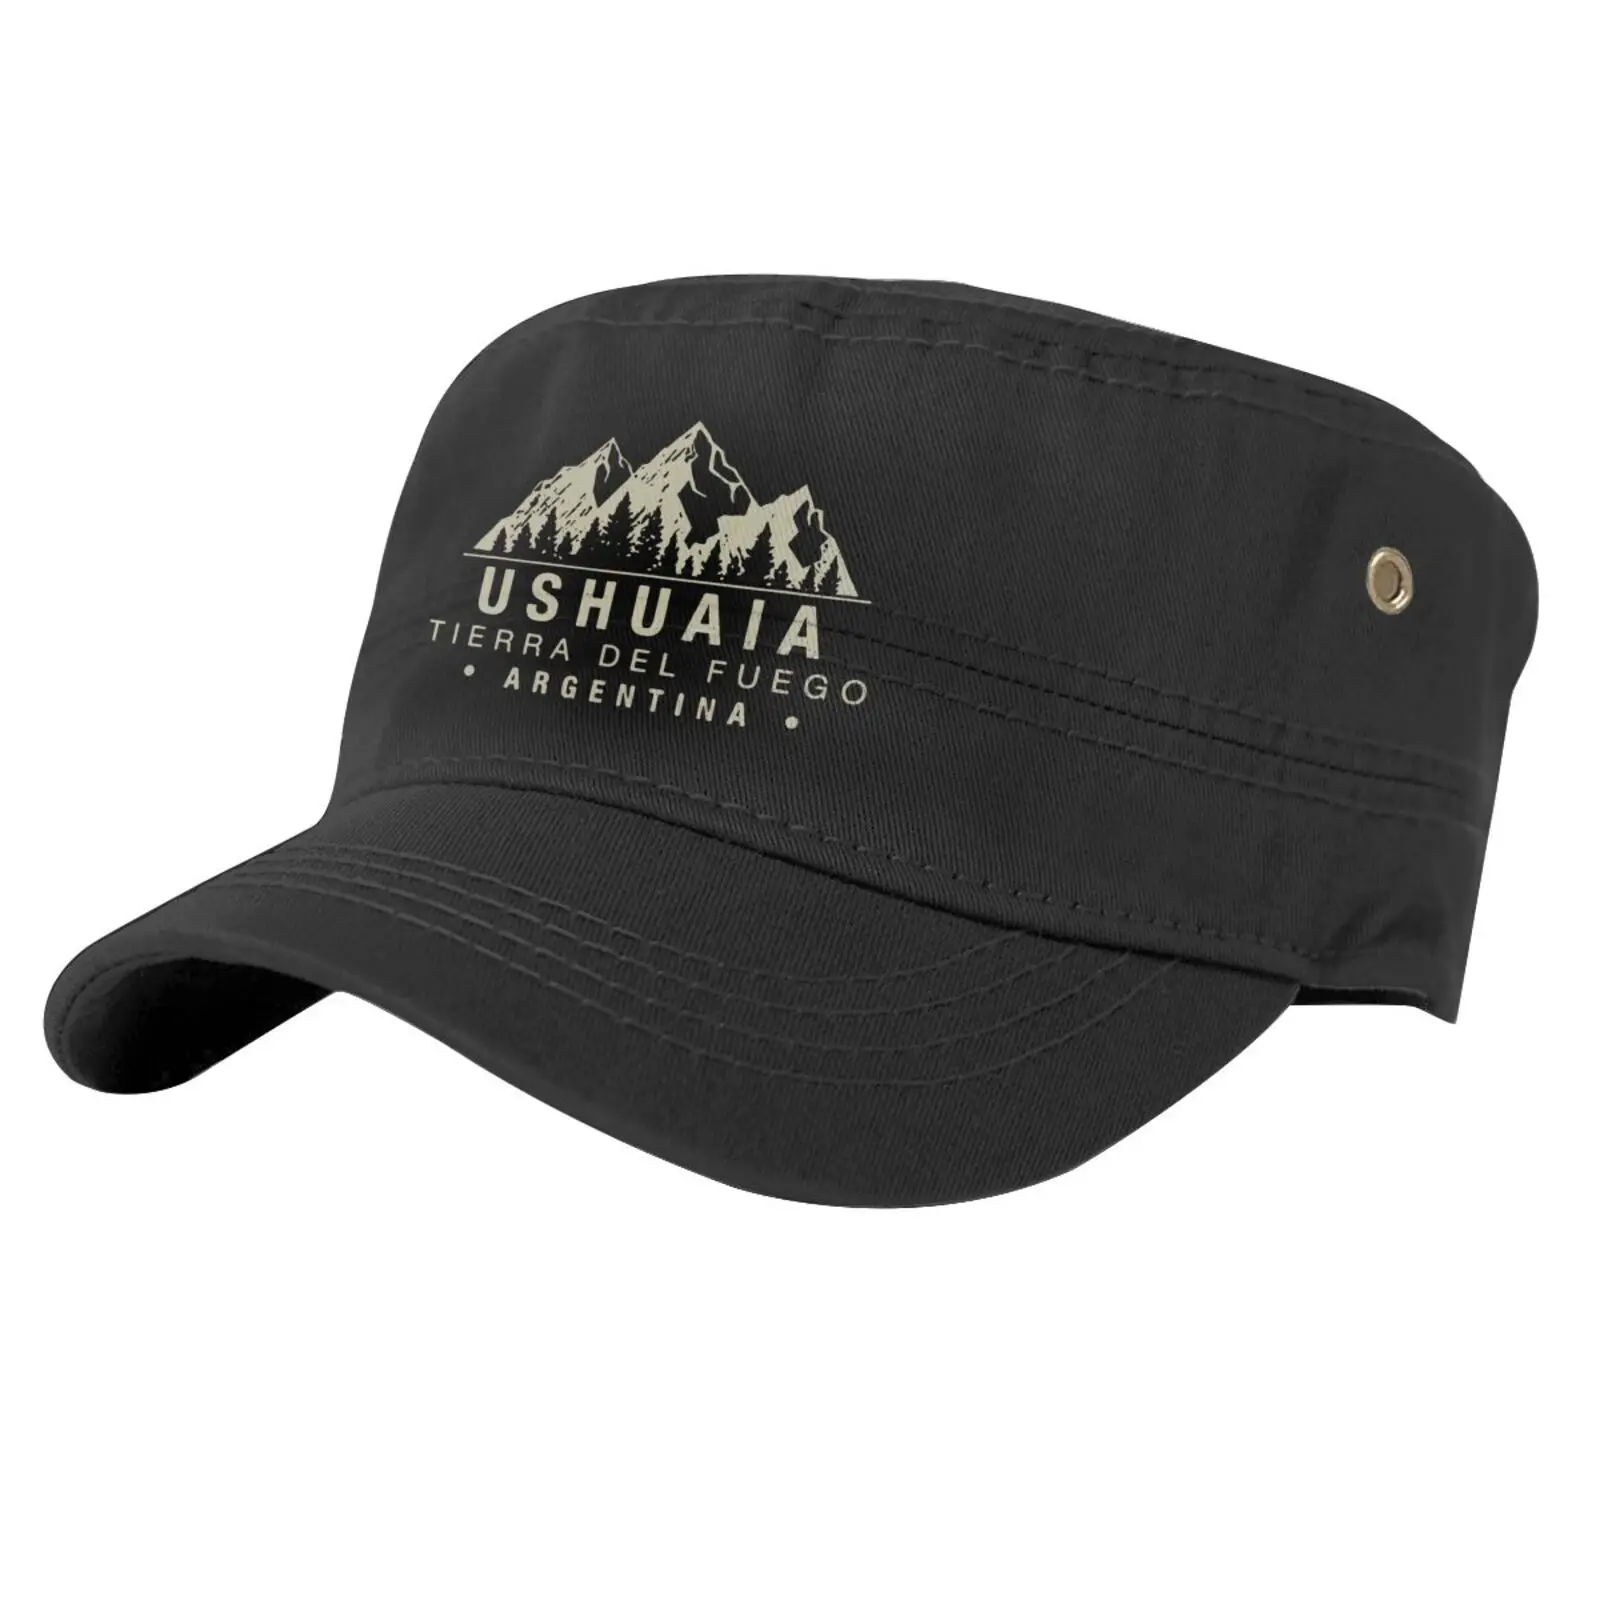 

Ushuaia Tierra Del Fuego Argentina Caps For Men Cap Male Mens Cap Golf Cap Custom Logo Women's Hat Beret Man Men's Cap Man Cap